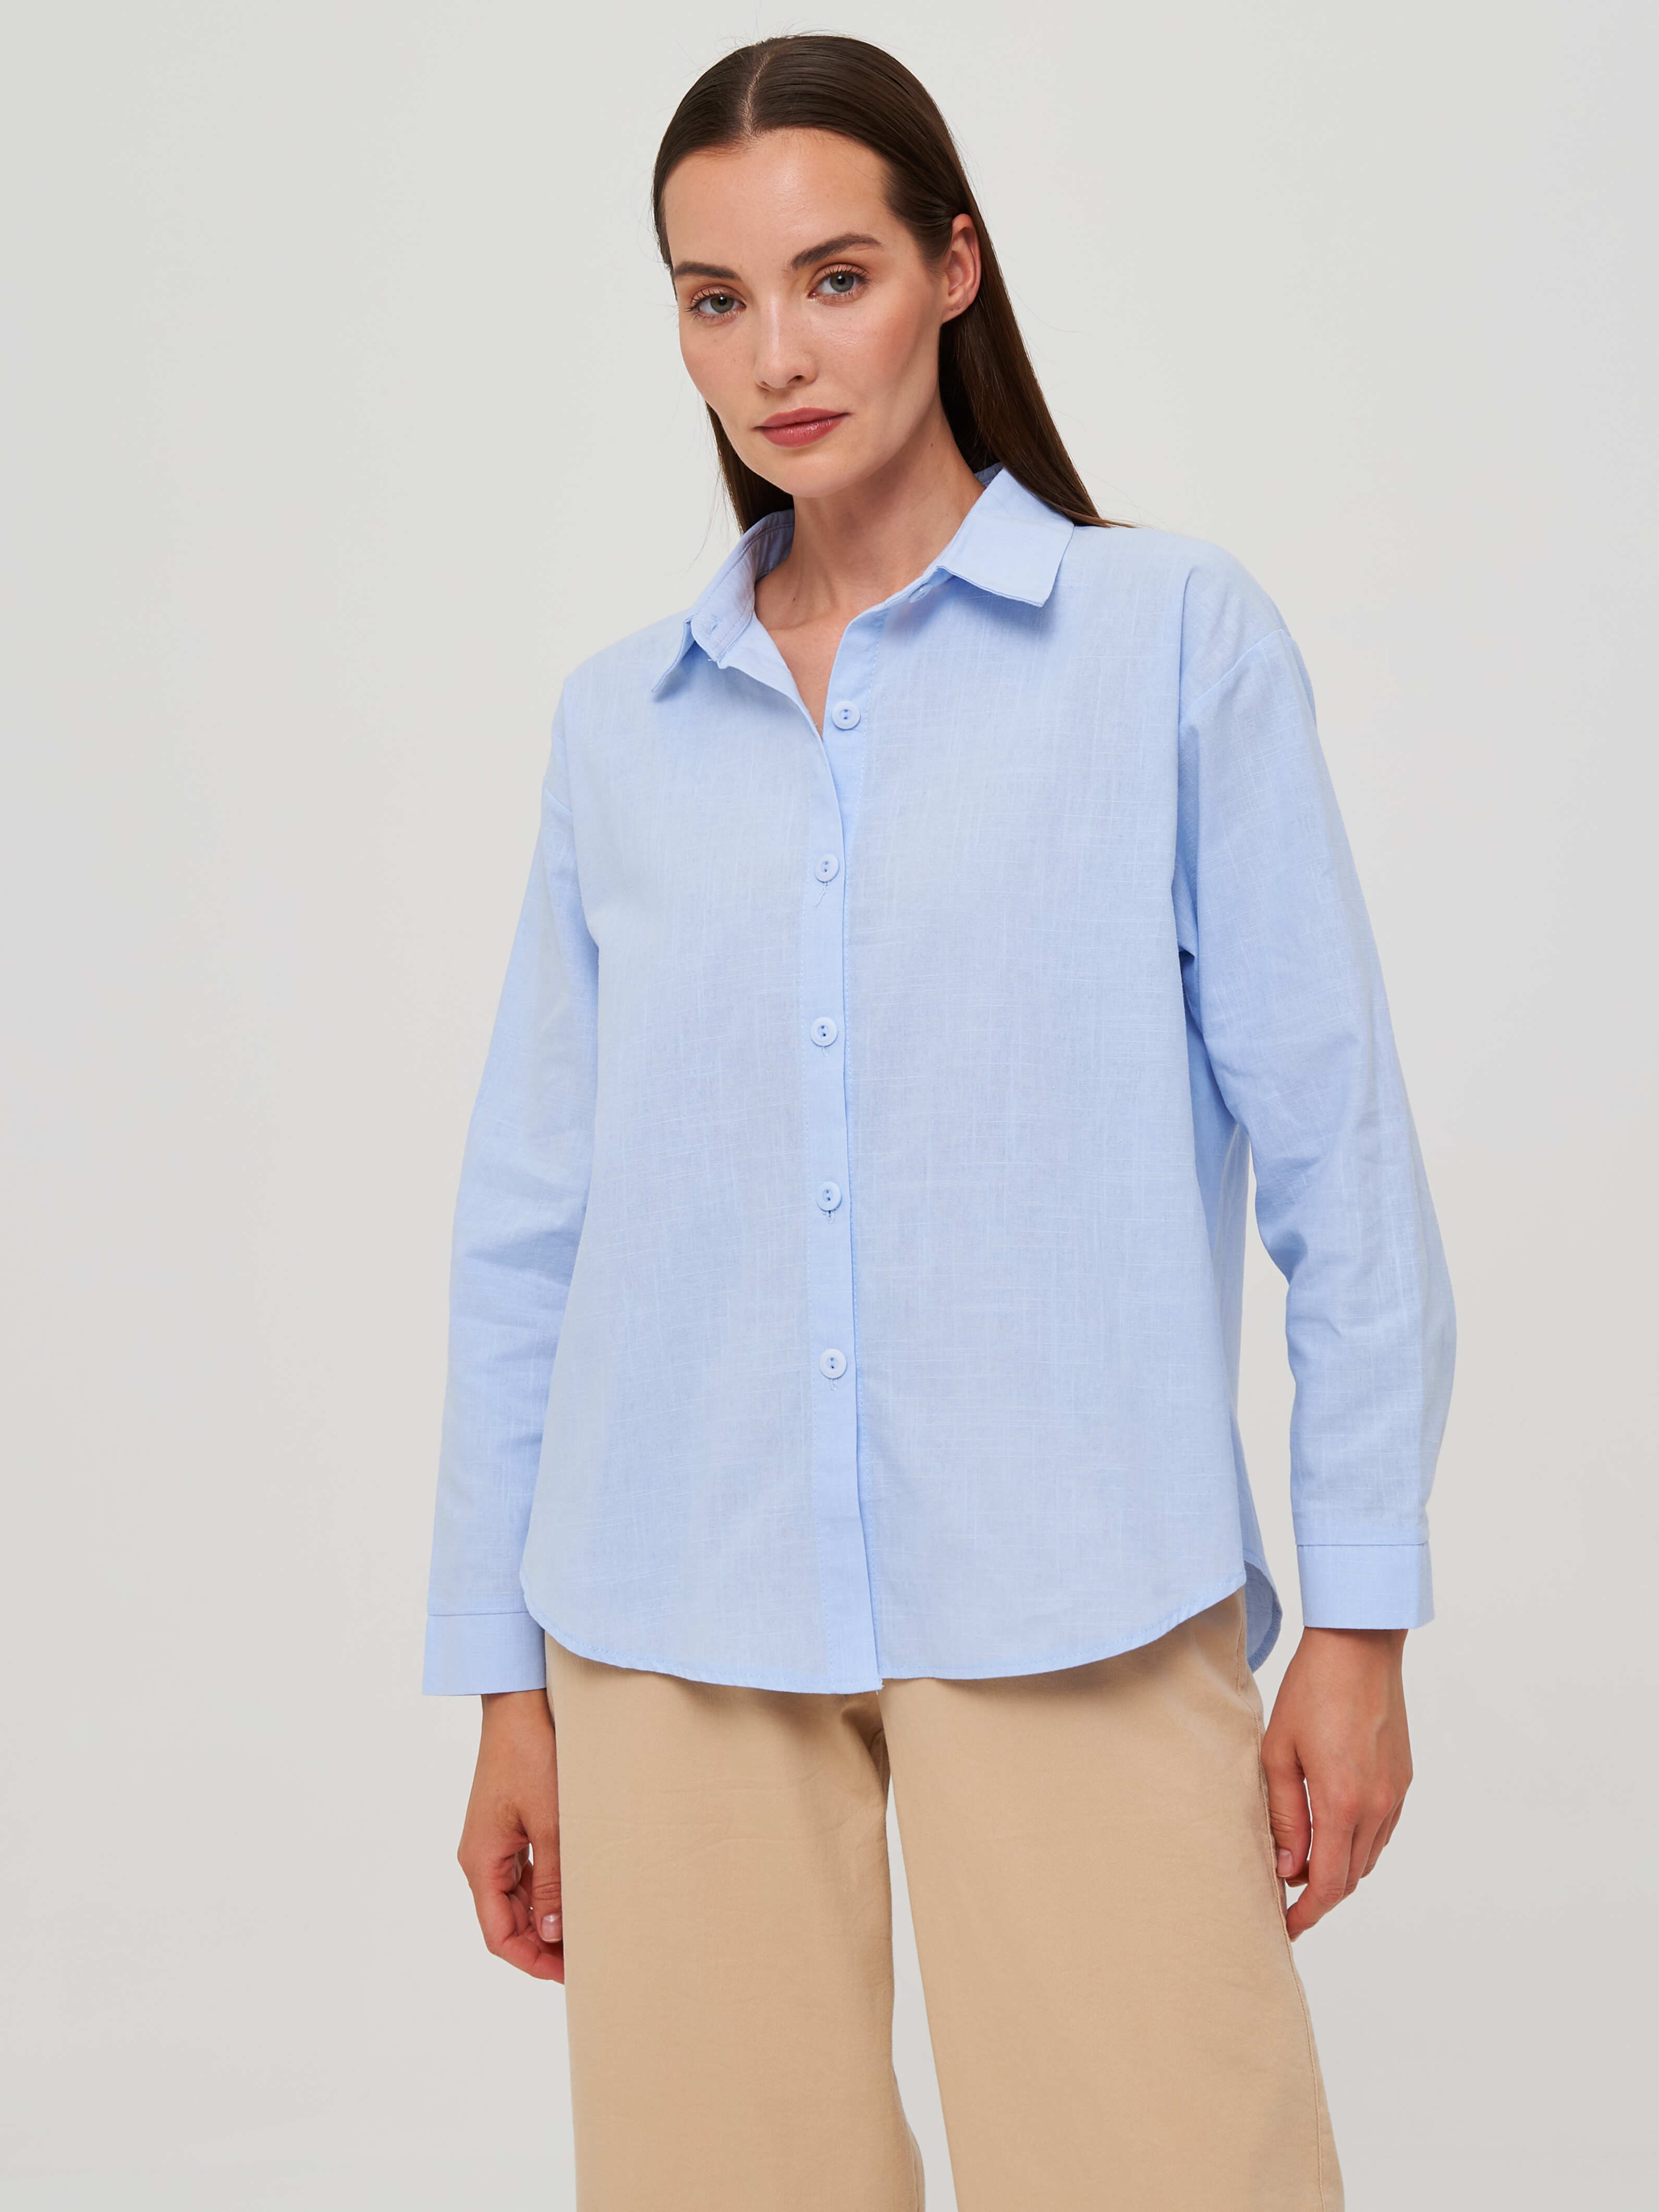 Рубашка женская Каляев 68505 голубая 46 RU